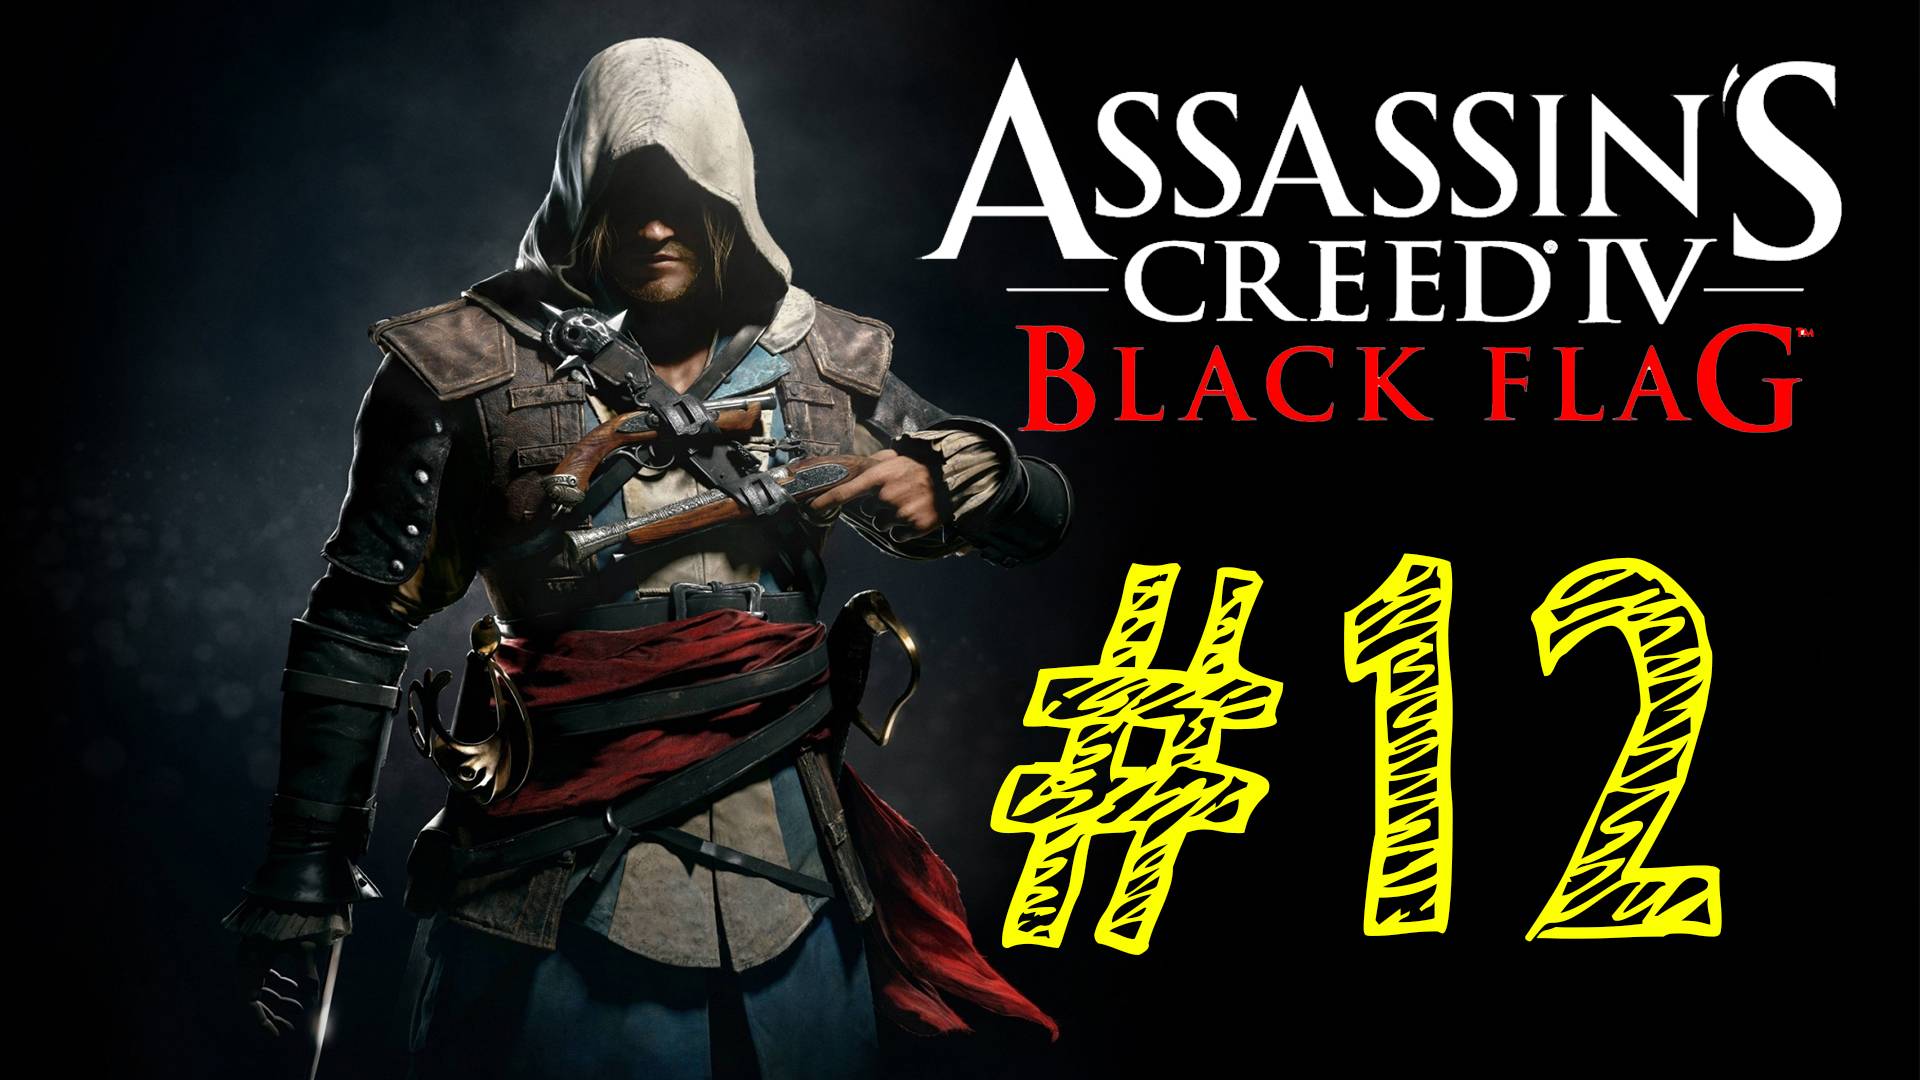 Assassins Creed IV Black Flag. Ассасин черный флаг. 12 выпуск. ВЕК ПИРАТСТВА. Прохождение компании